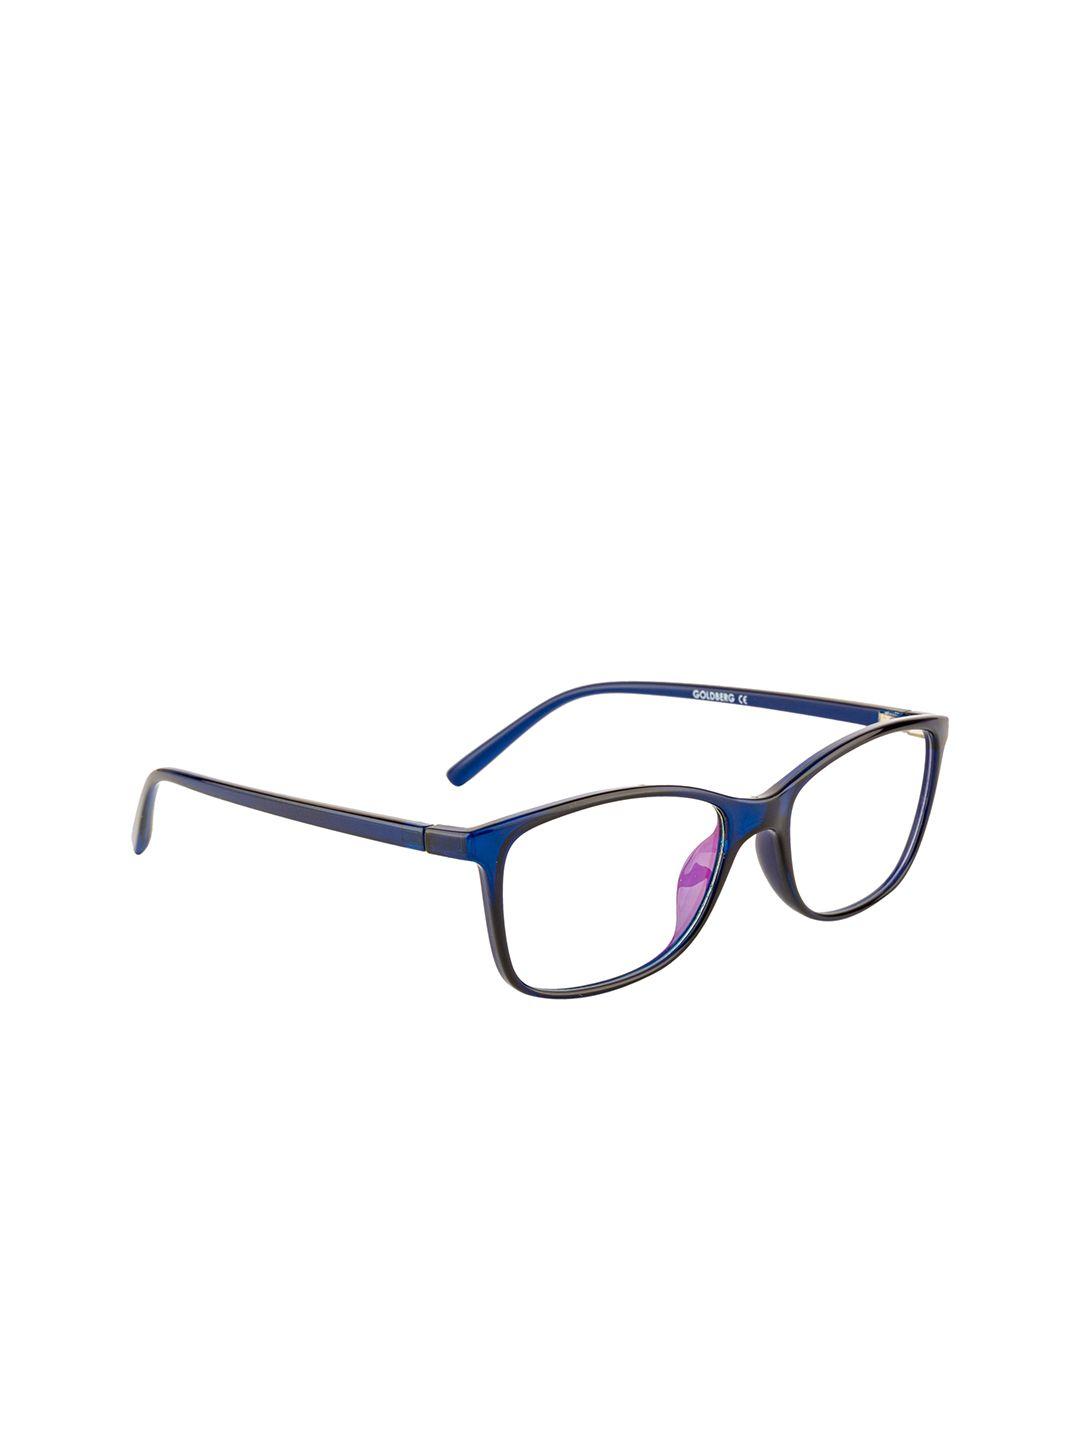 gold berg unisex blue full rim wayfarer frames eyeglasses